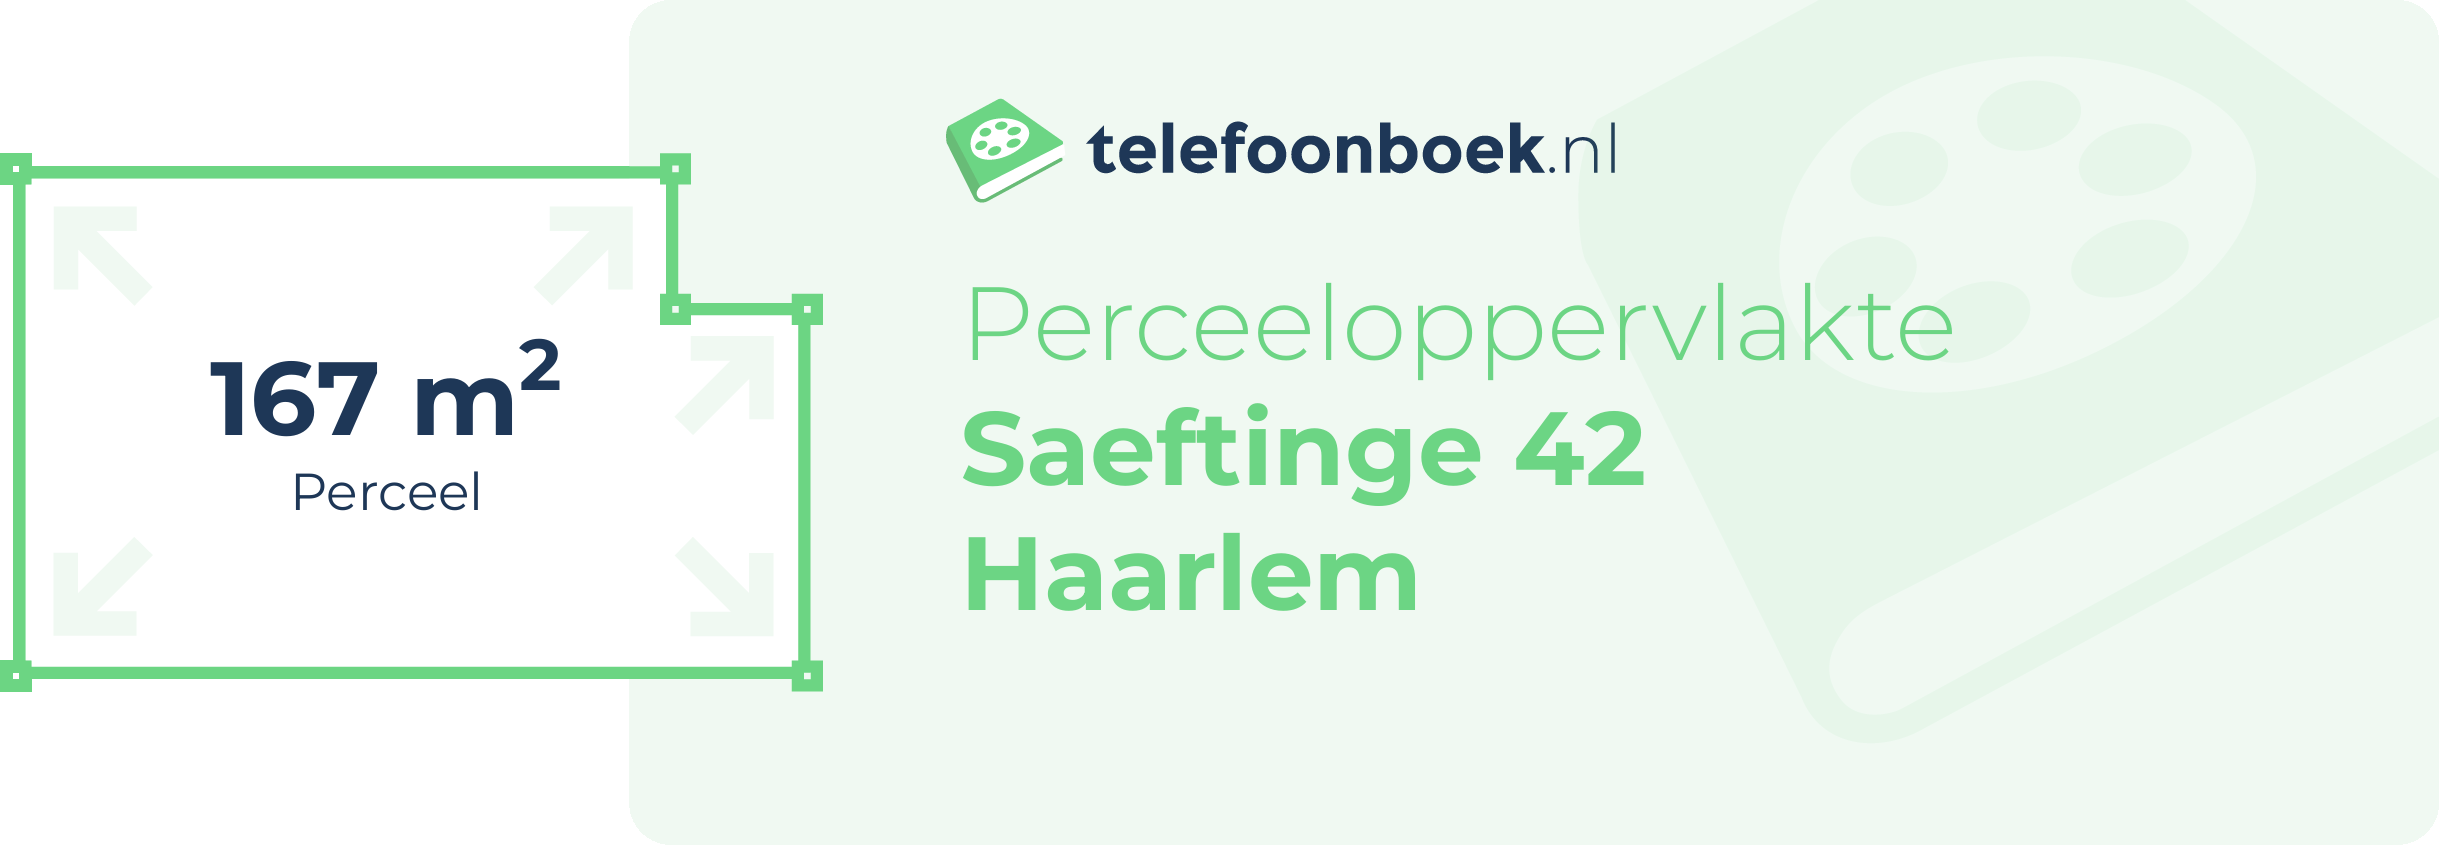 Perceeloppervlakte Saeftinge 42 Haarlem